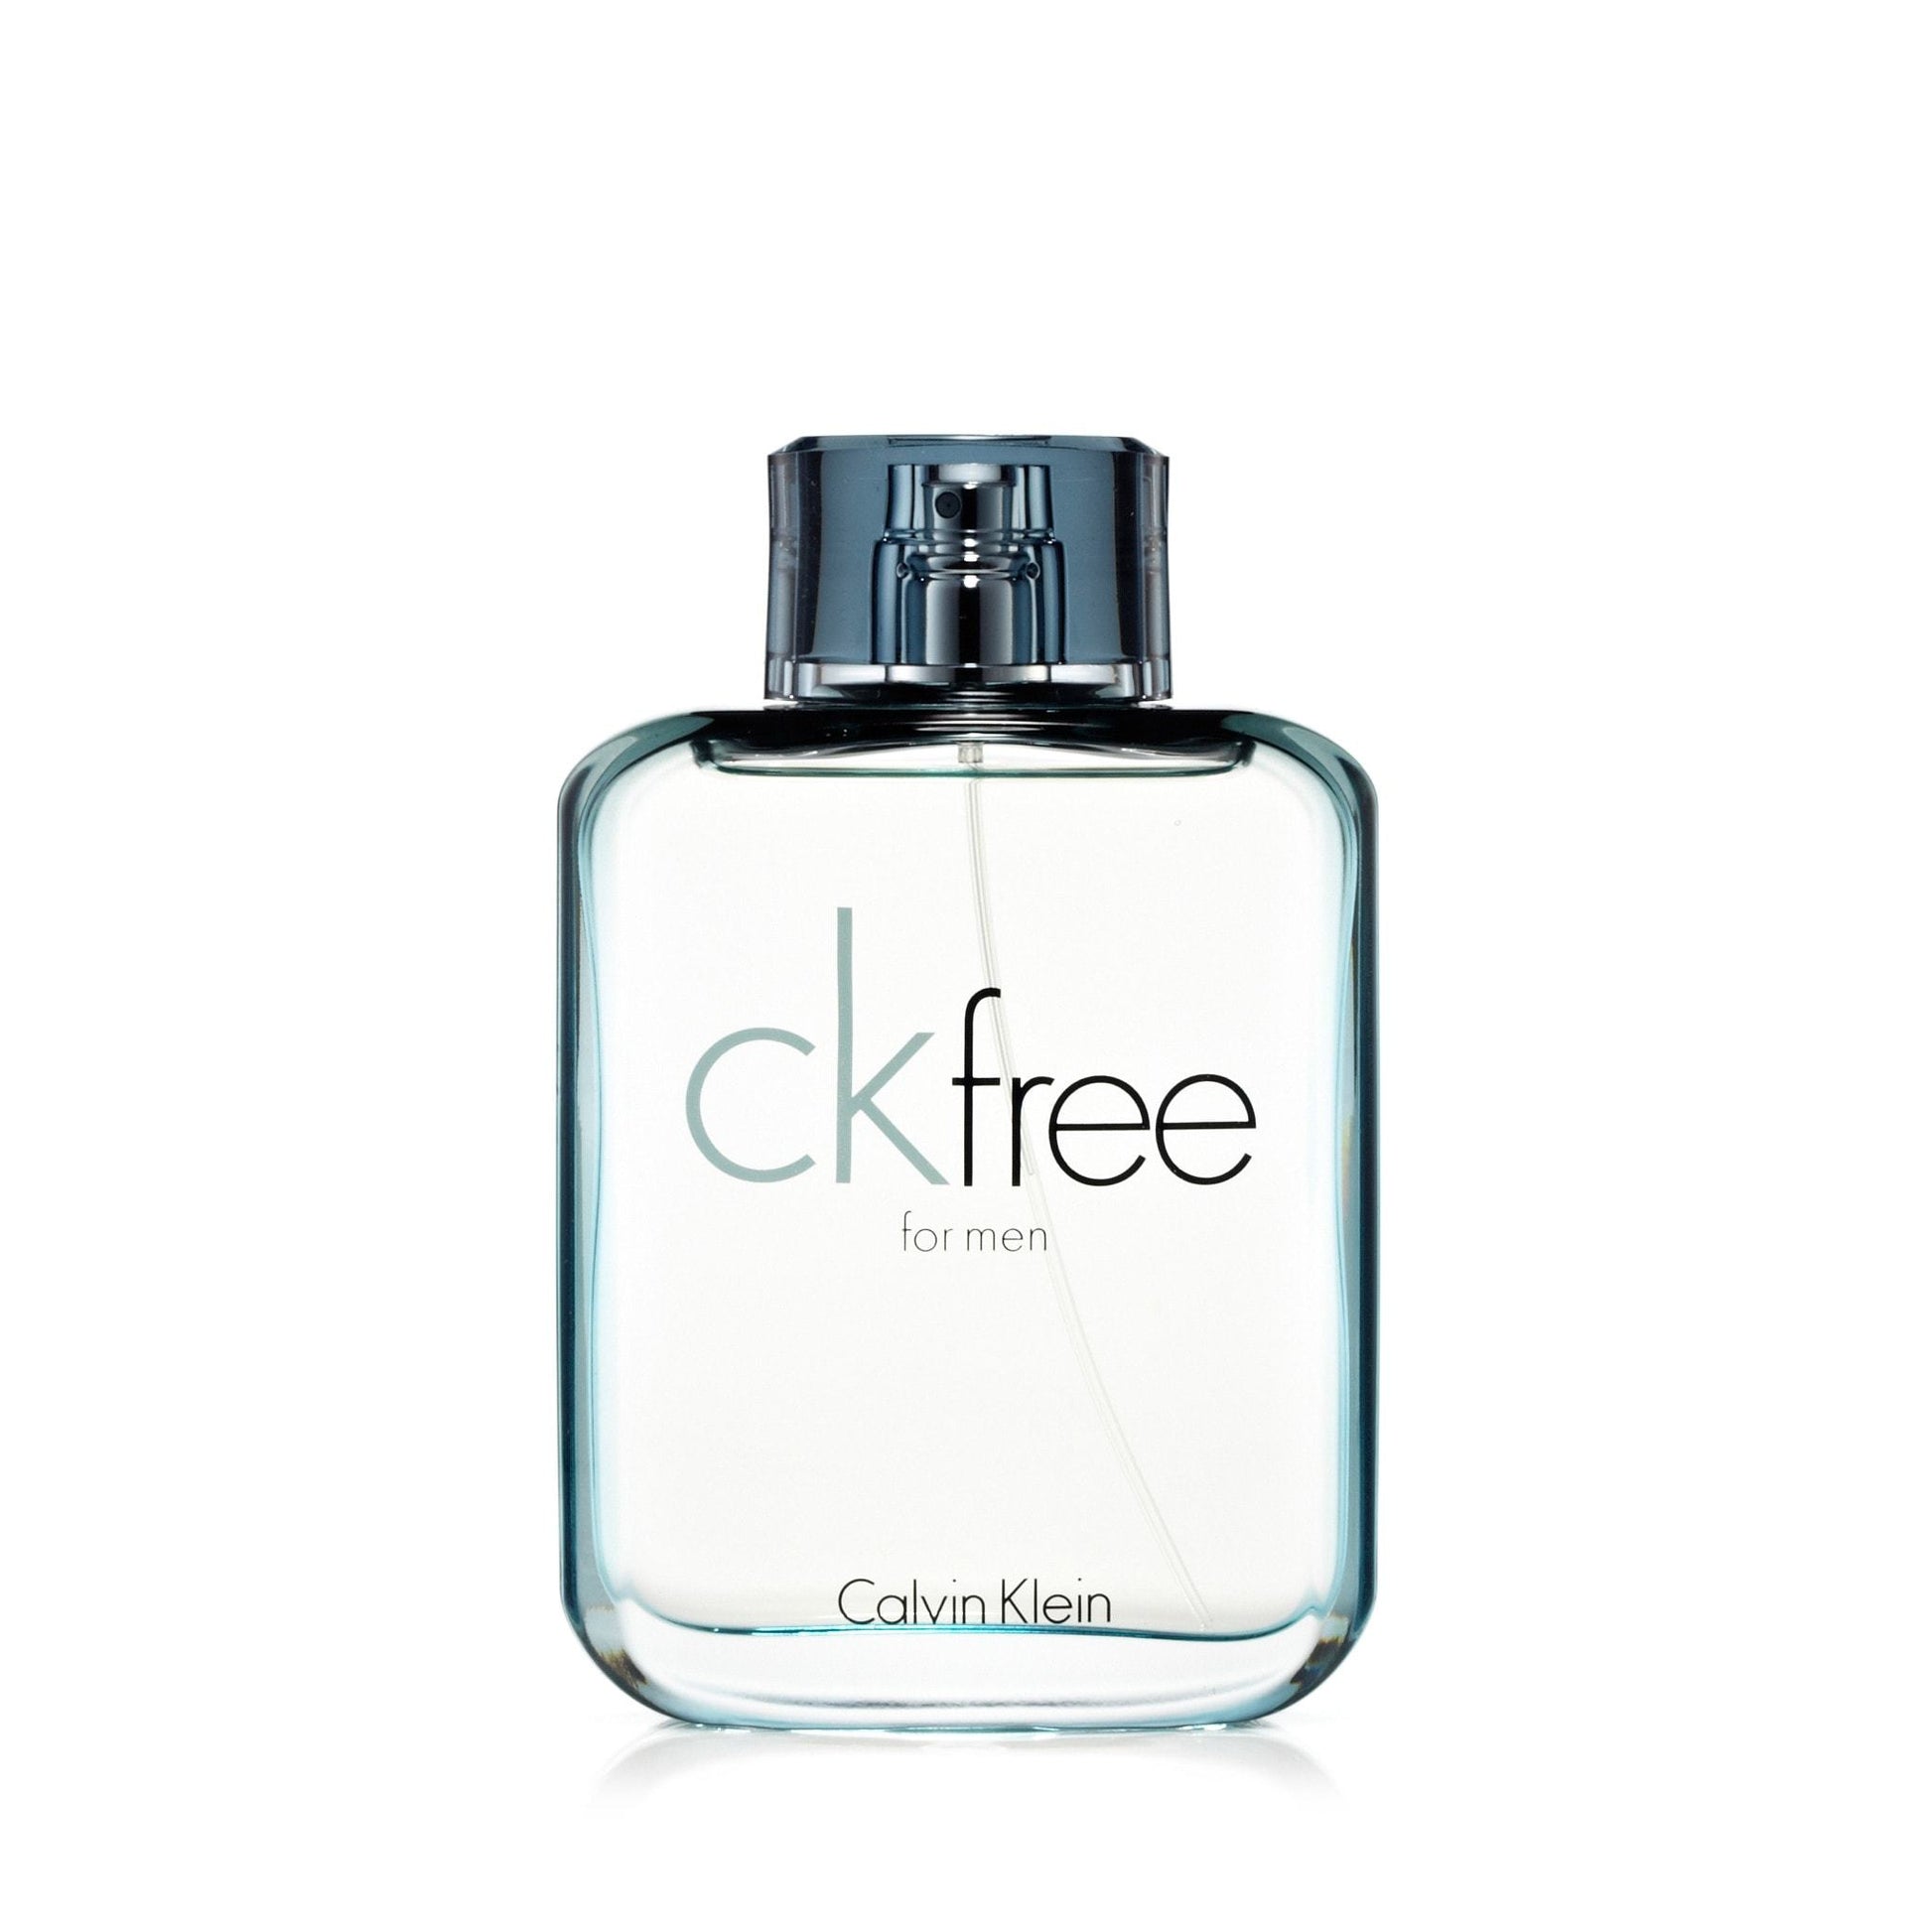 Free Eau de Toilette Spray for Men by Calvin Klein, Product image 1